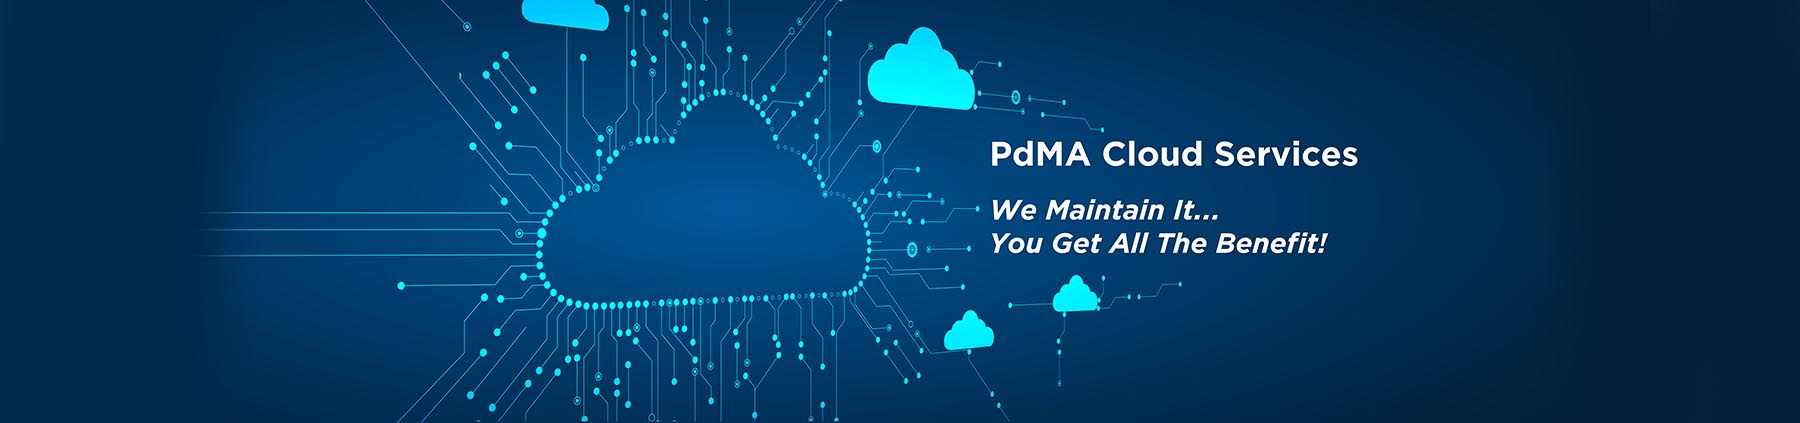 PdMA Cloud Services